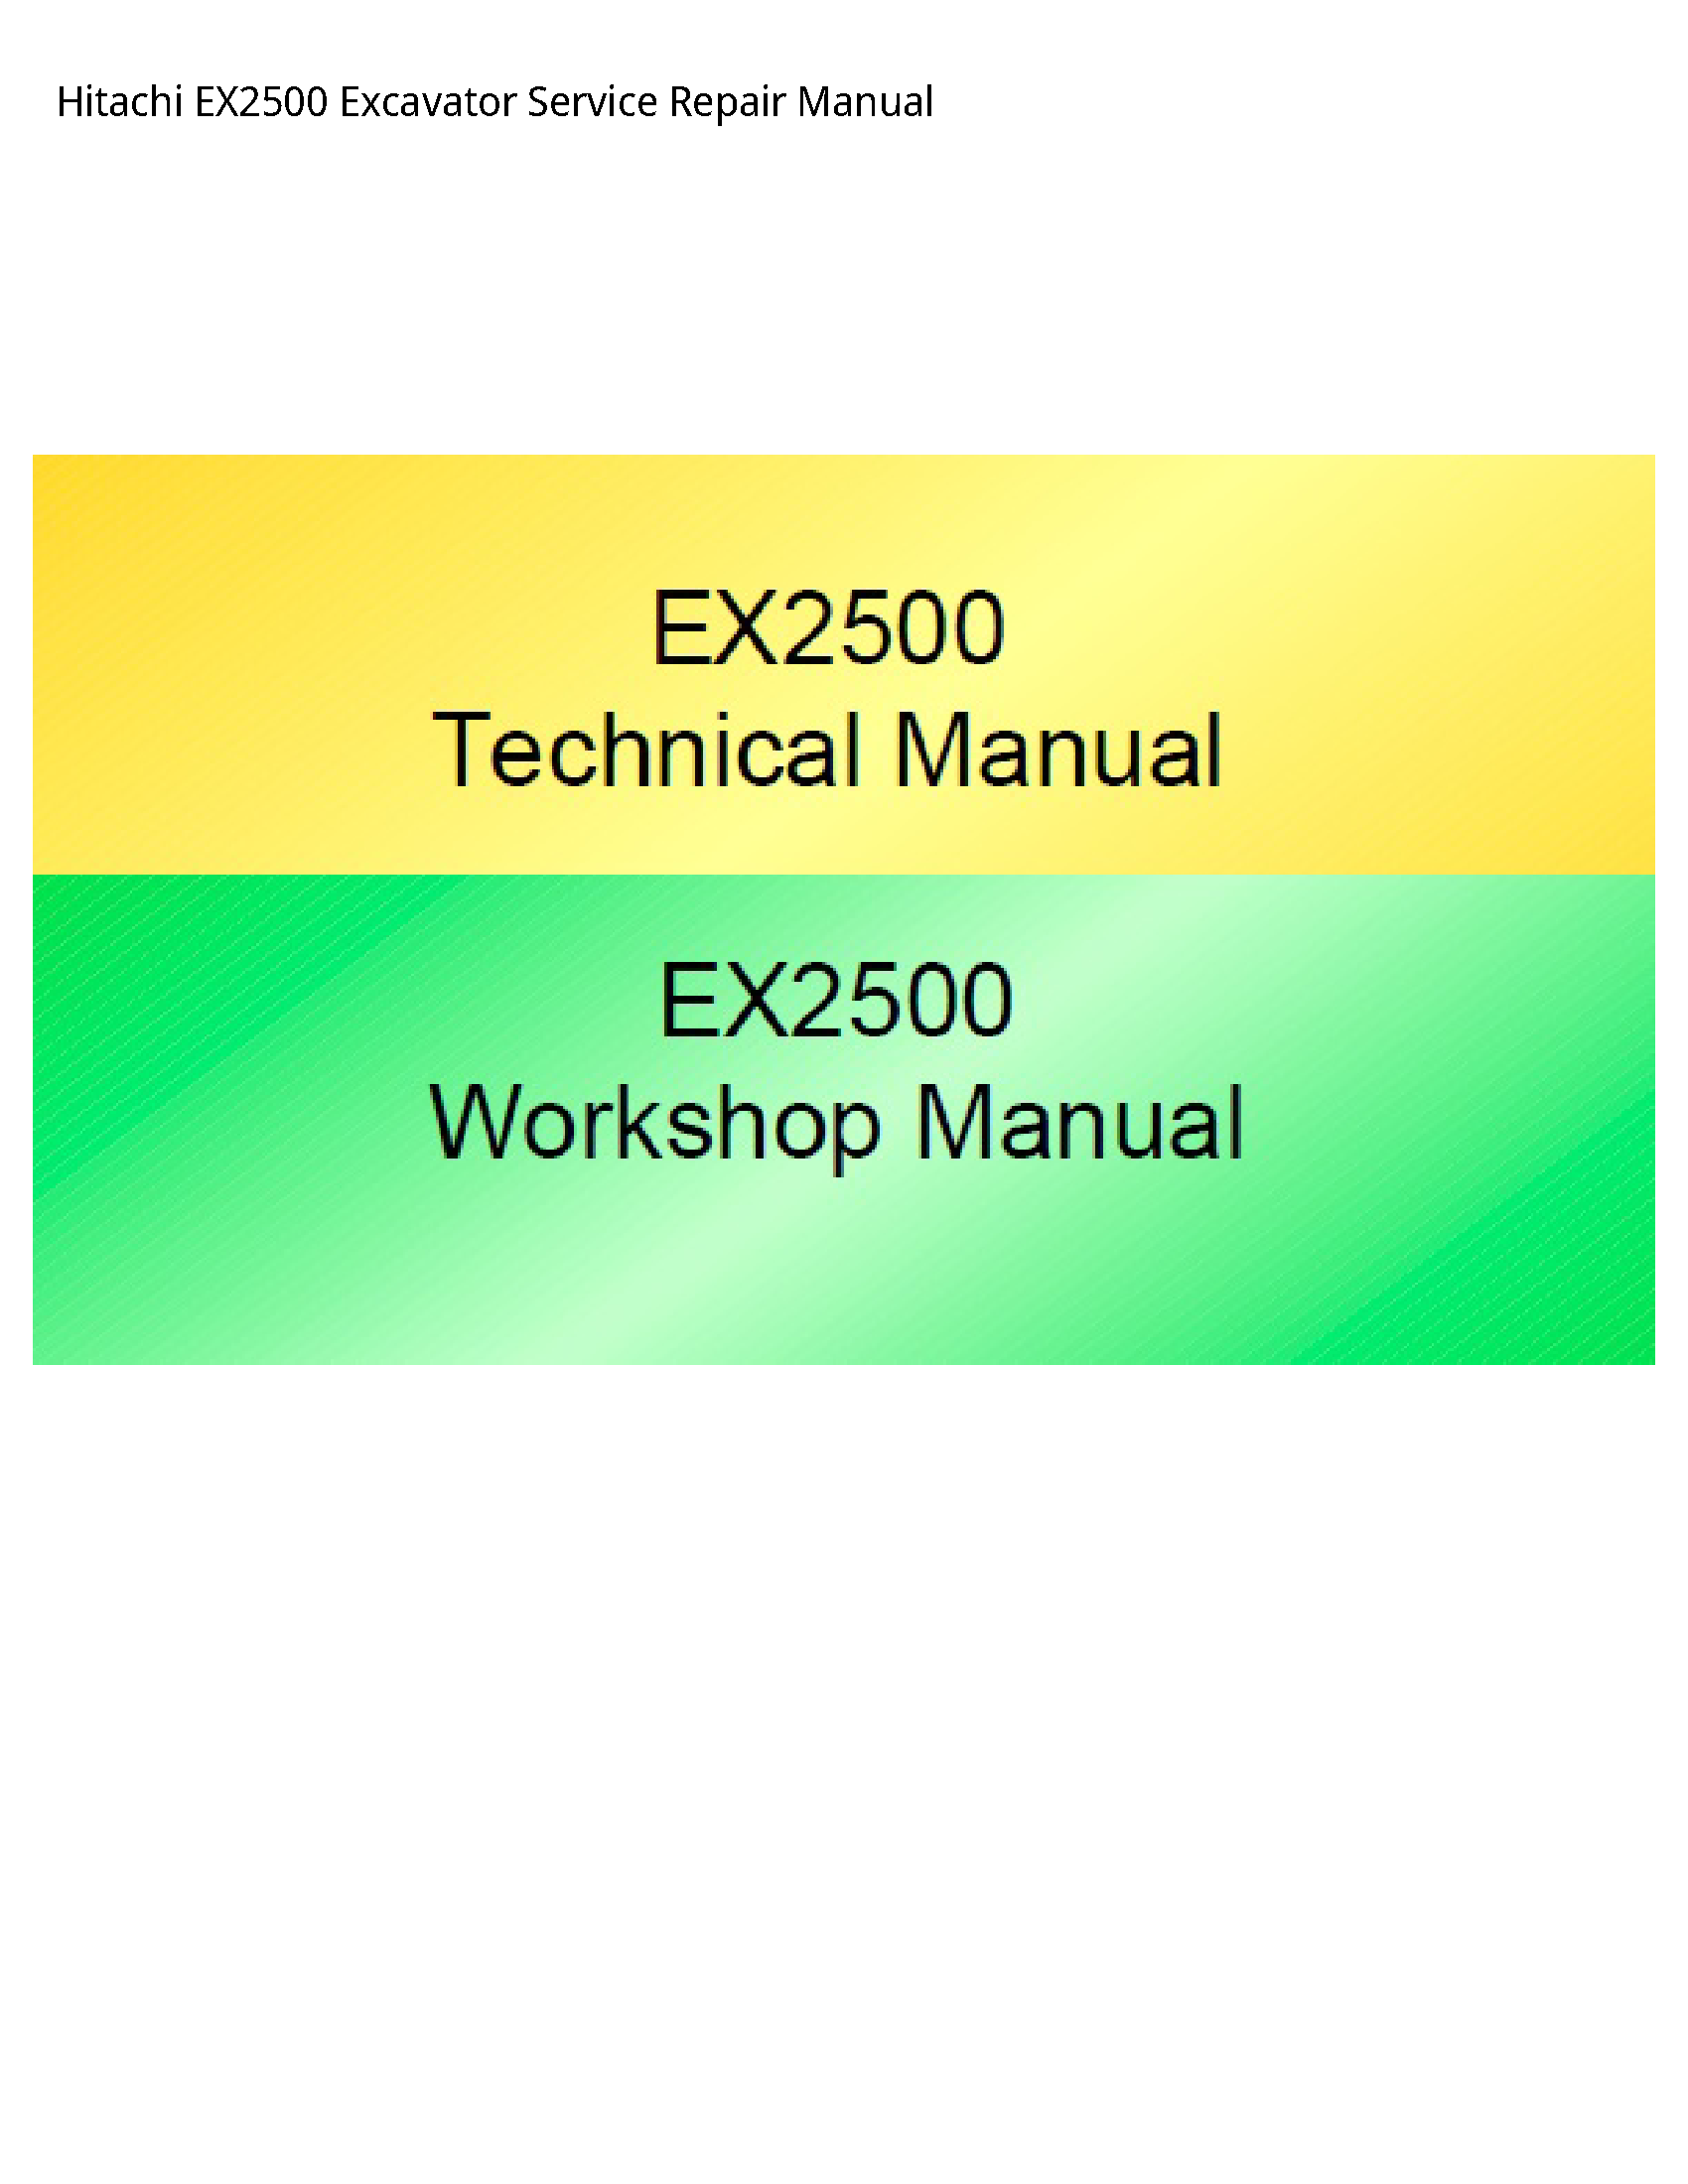 Hitachi EX2500 Excavator manual